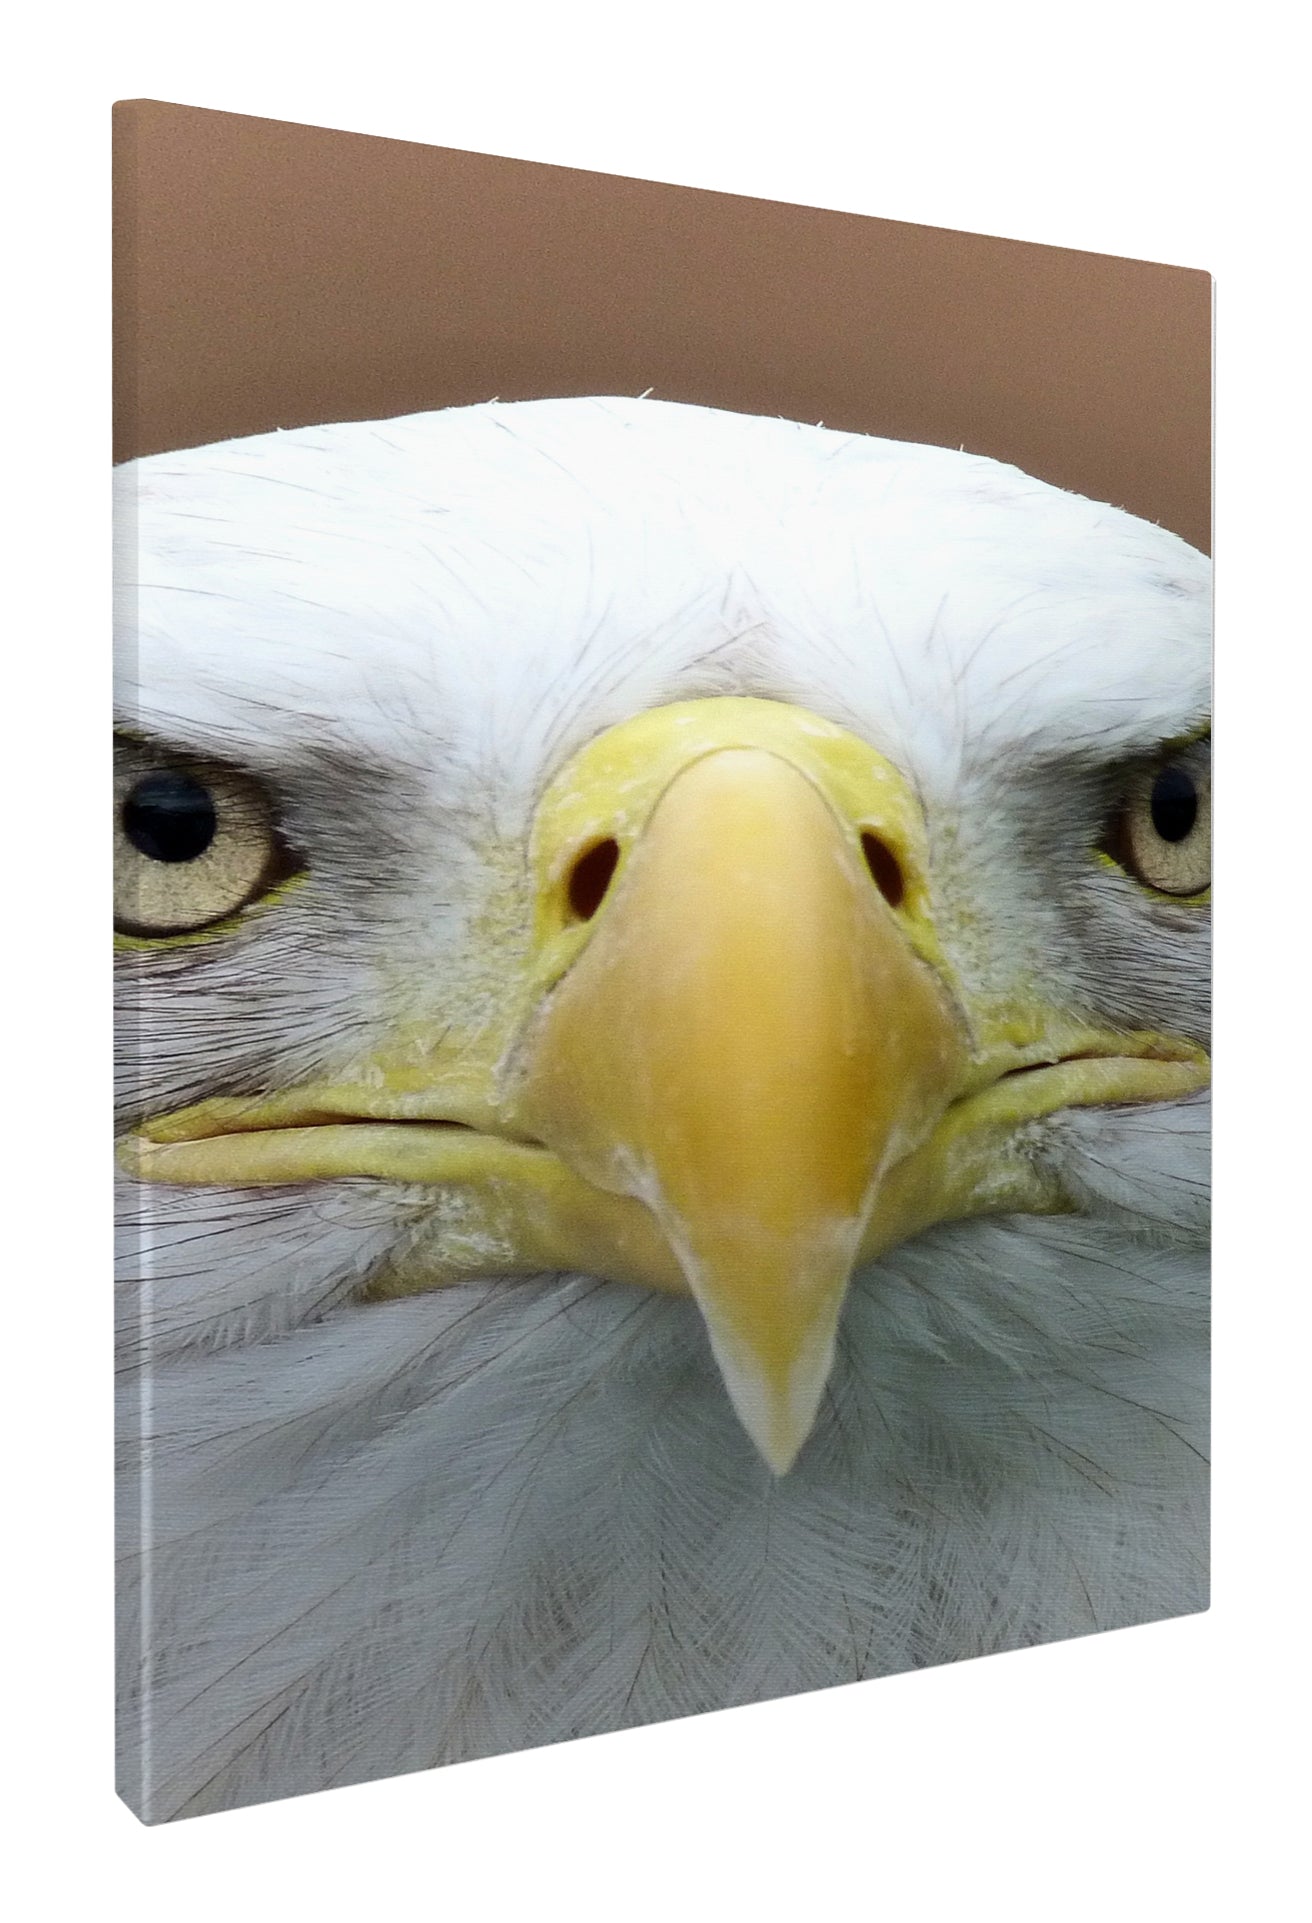 Bald eagle beak